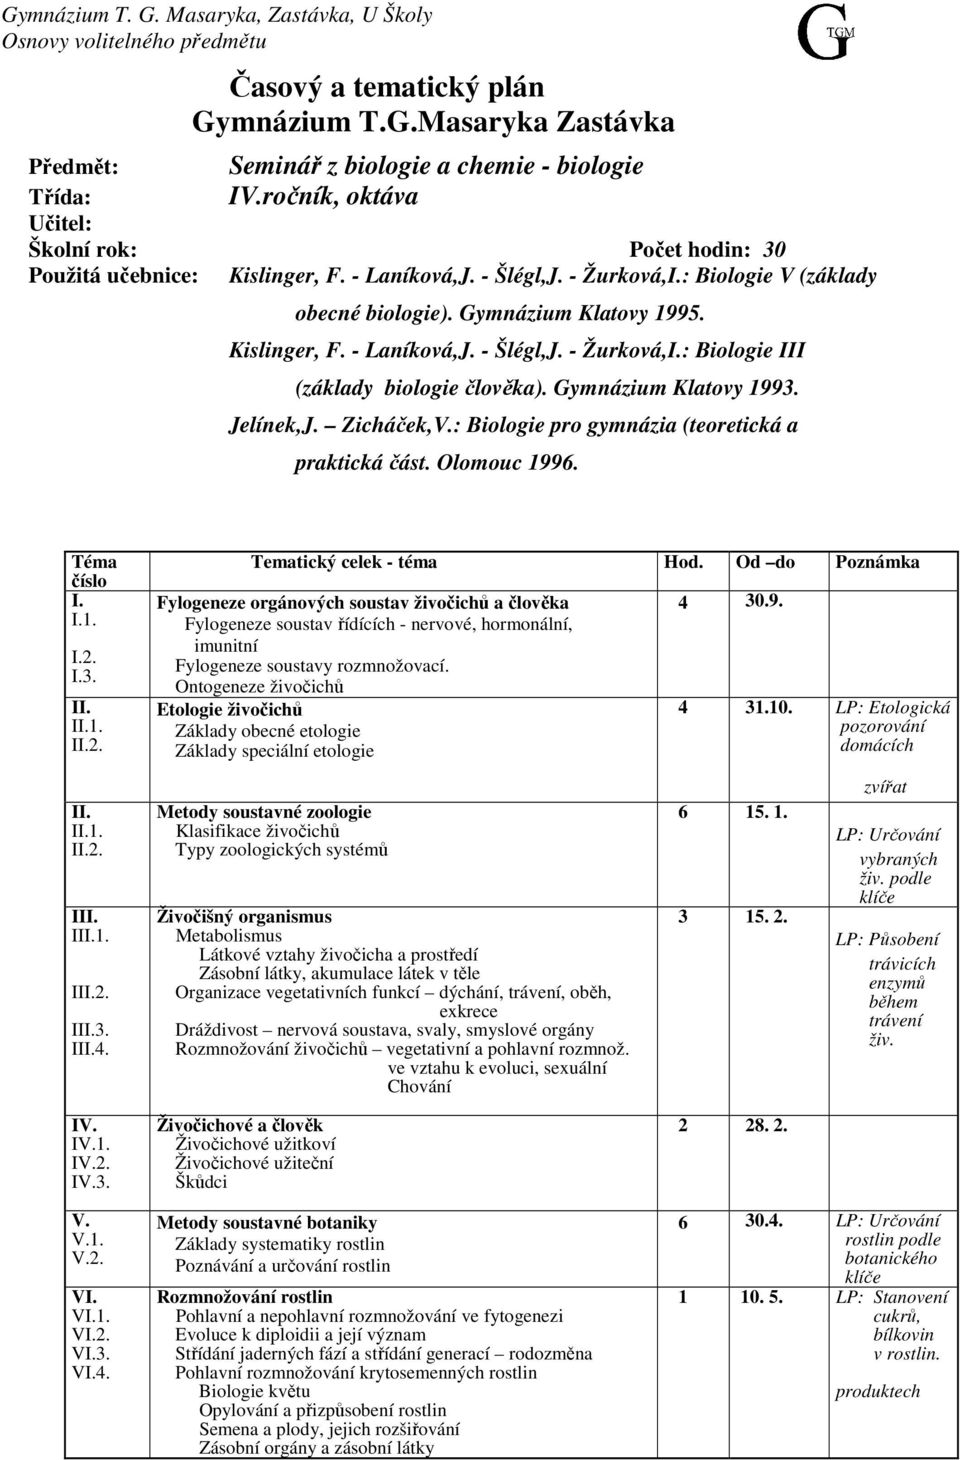 Gymnázium Klatovy 1993. Jelínek,J. Zicháček,V.: Biologie pro gymnázia (teoretická a praktická část. Olomouc 1996. Téma číslo I. I.1. I.2. I.3. II. II.1. II.2. II. II.1. II.2. III. III.1. III.2. III.3. III.4.